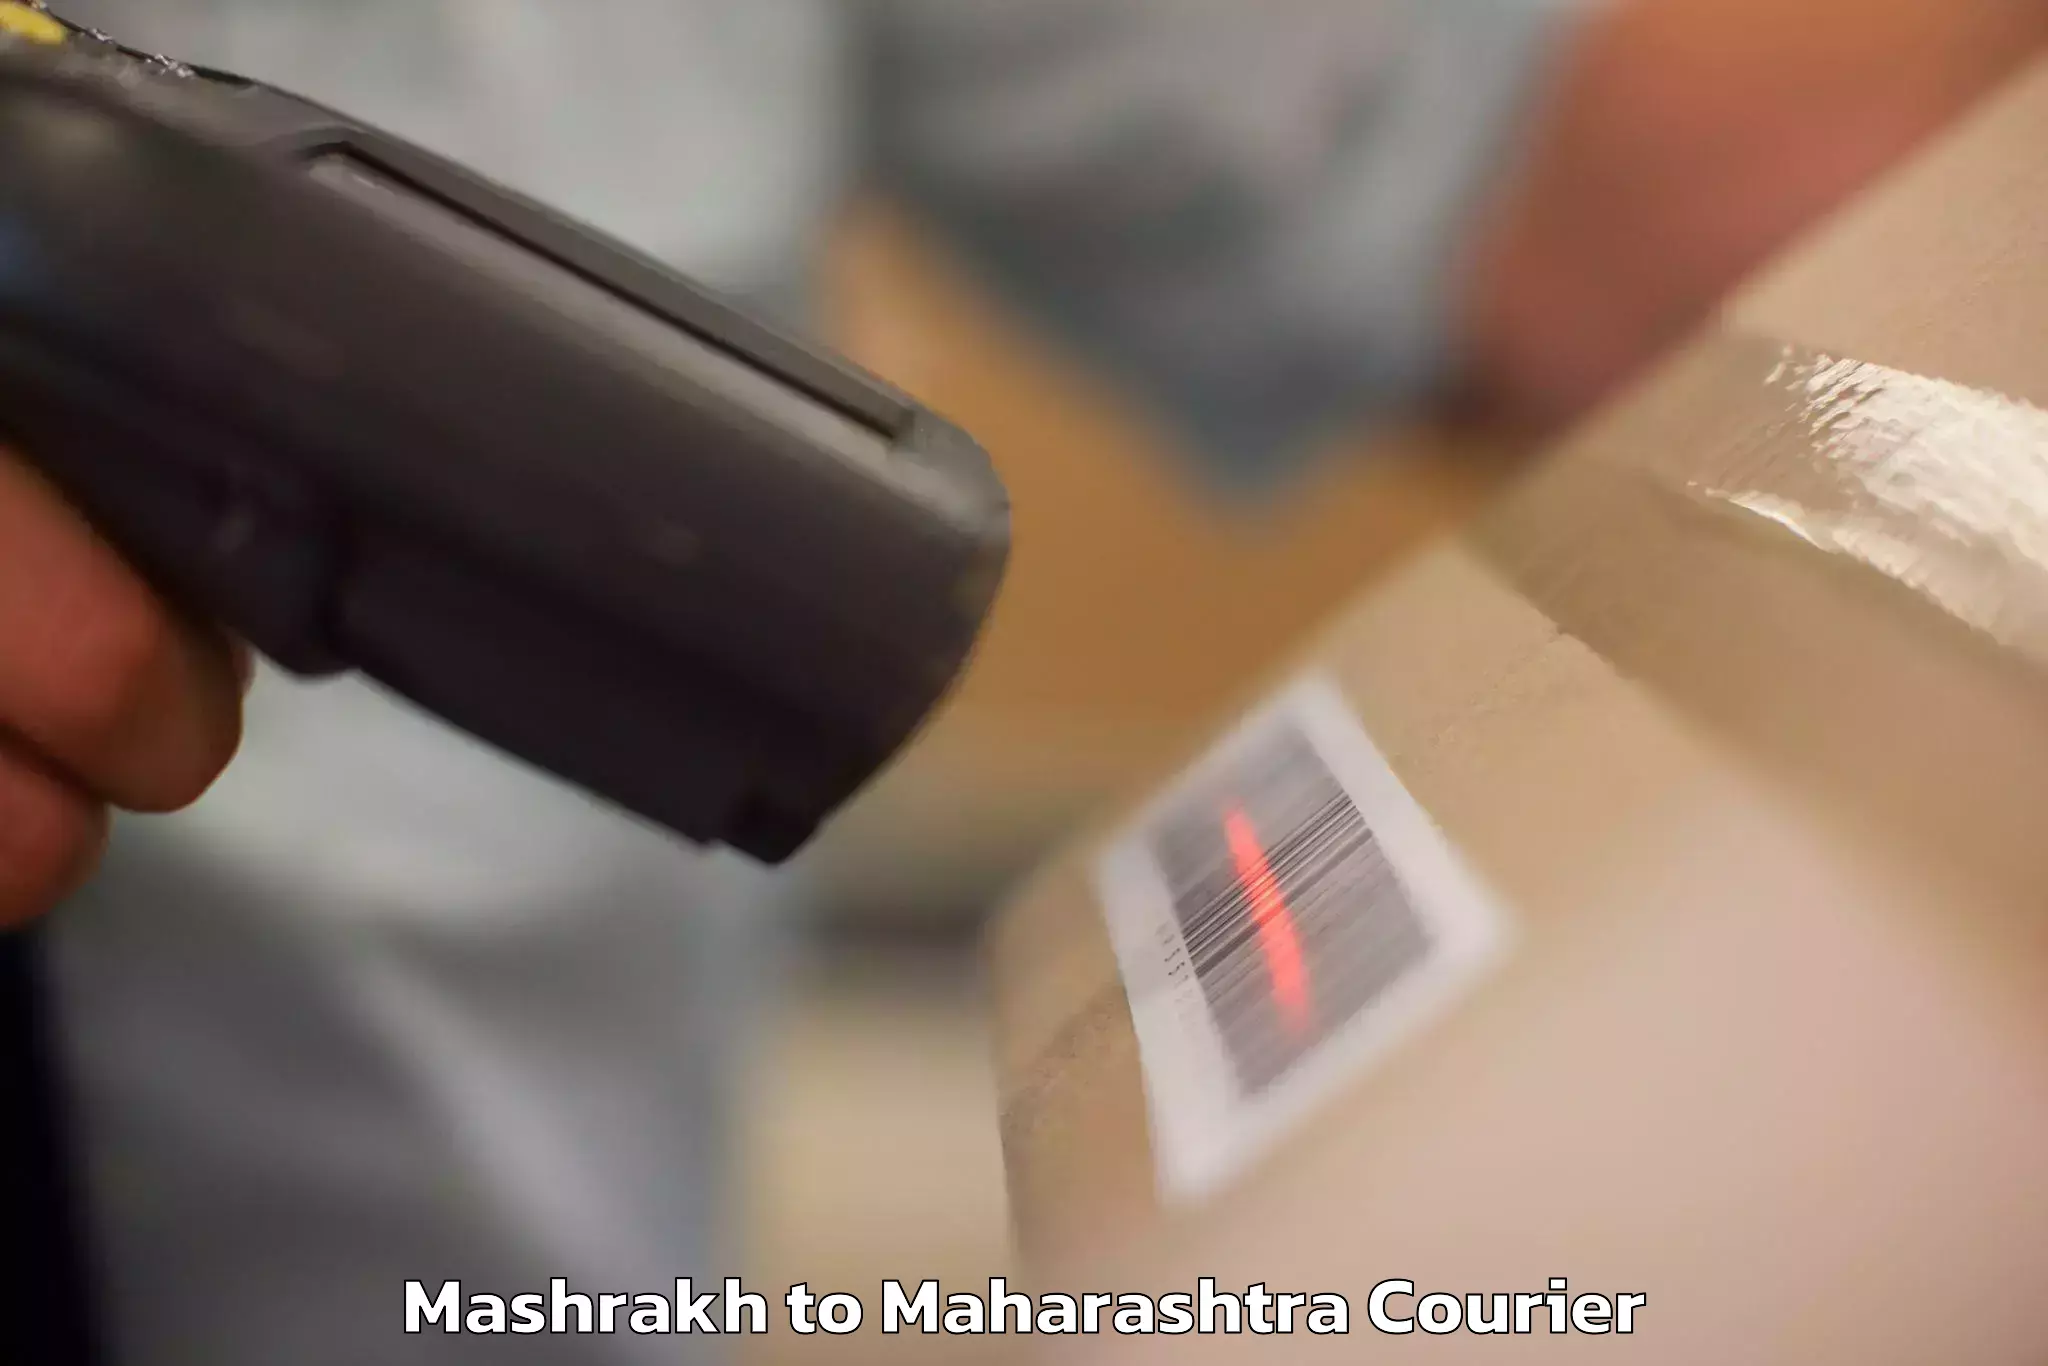 Luggage shipping specialists Mashrakh to Maharashtra